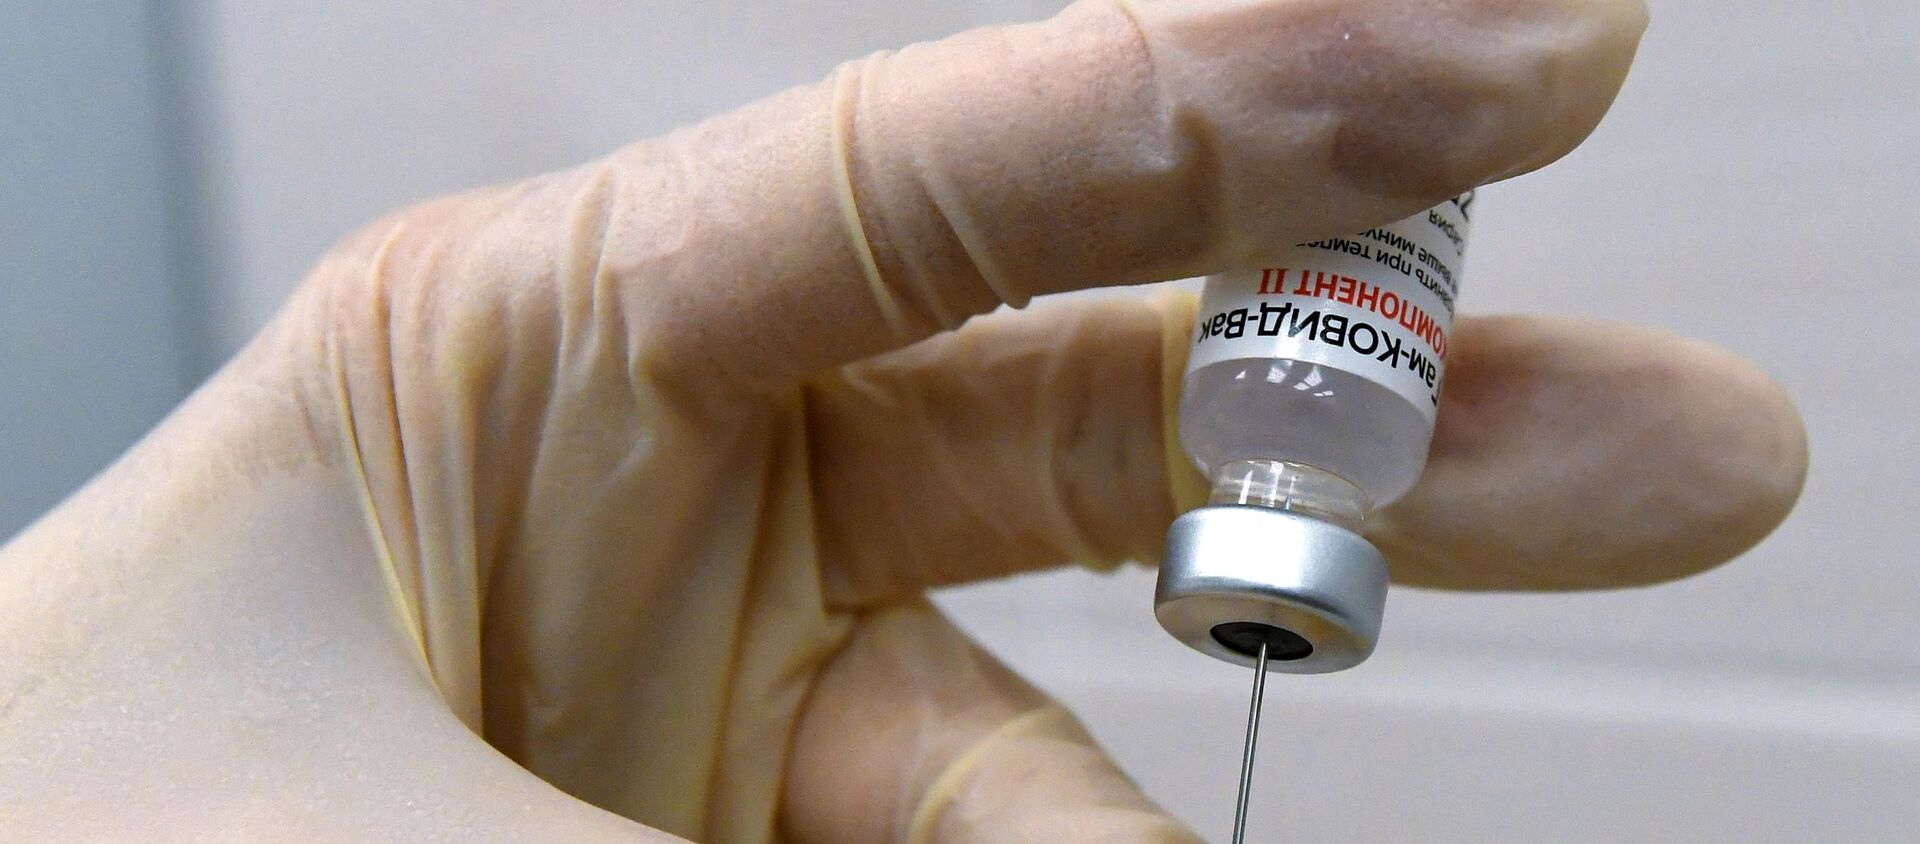 Медсестра набирает в шприц вакцину против COVID-19 Спутник V (Гам-КОВИД-Вак) - Sputnik Lietuva, 1920, 01.03.2021